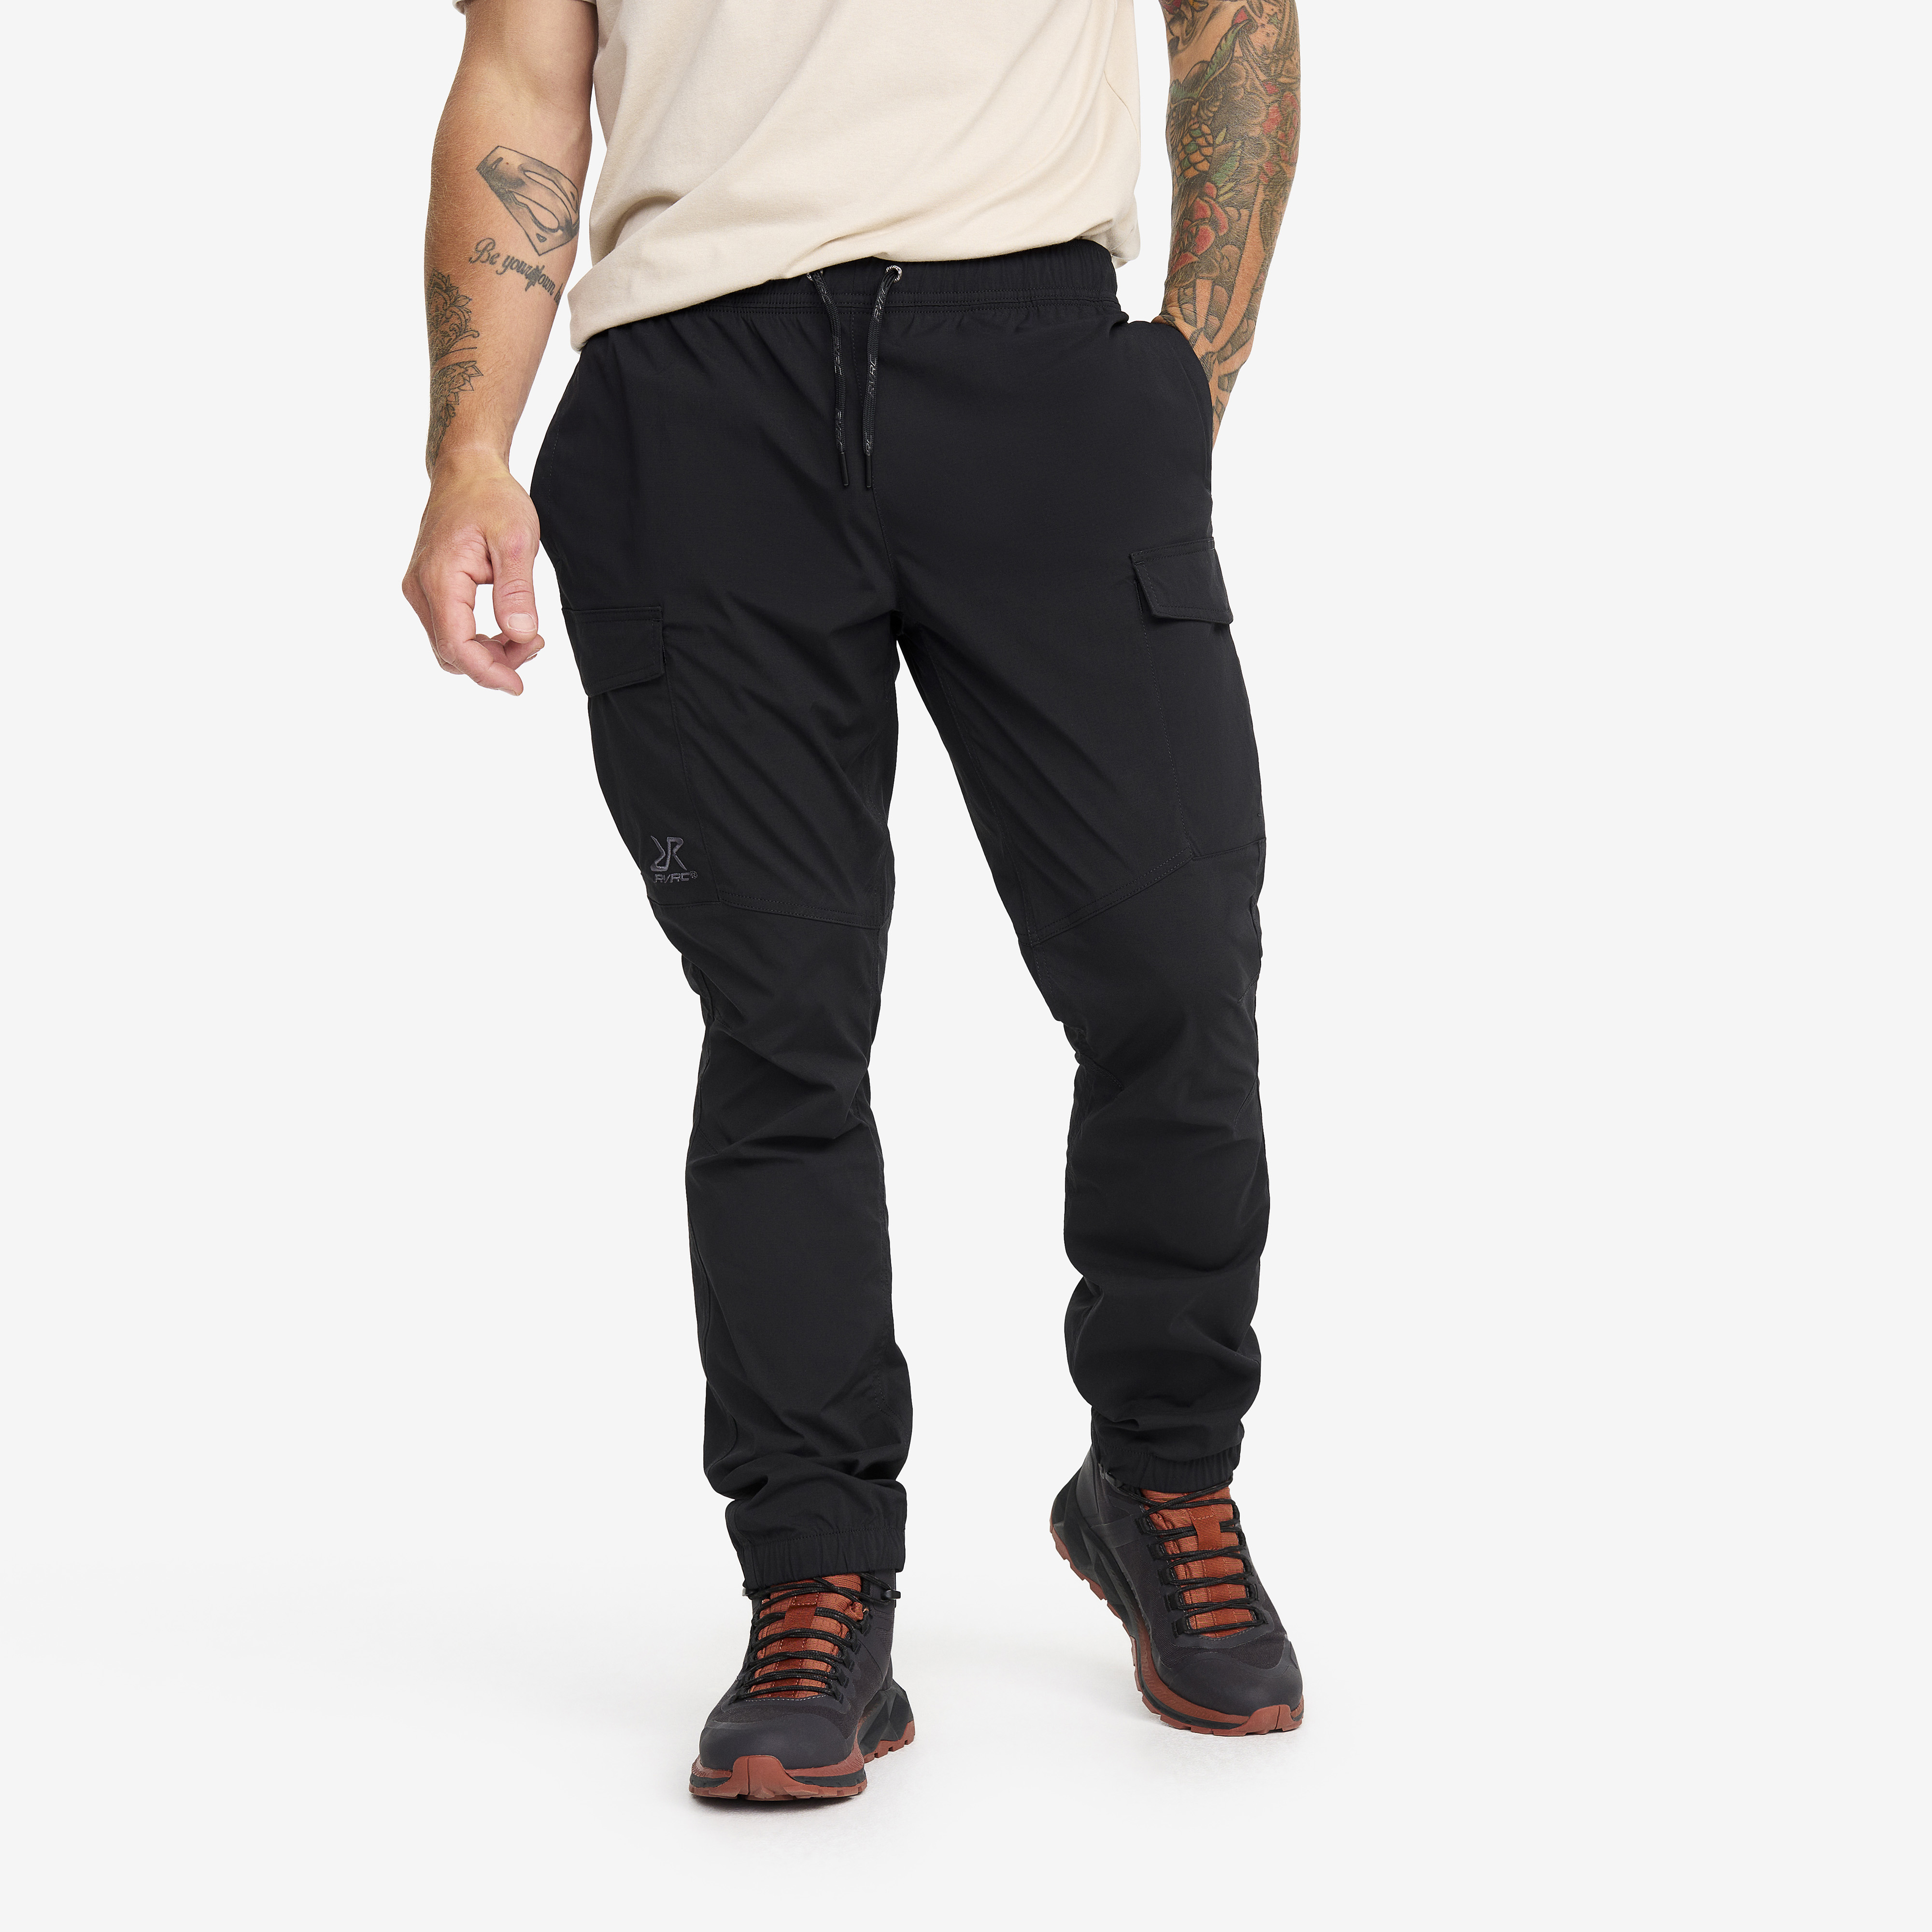 Buy Grey Trousers & Pants for Men by ECKO UNLTD Online | Ajio.com